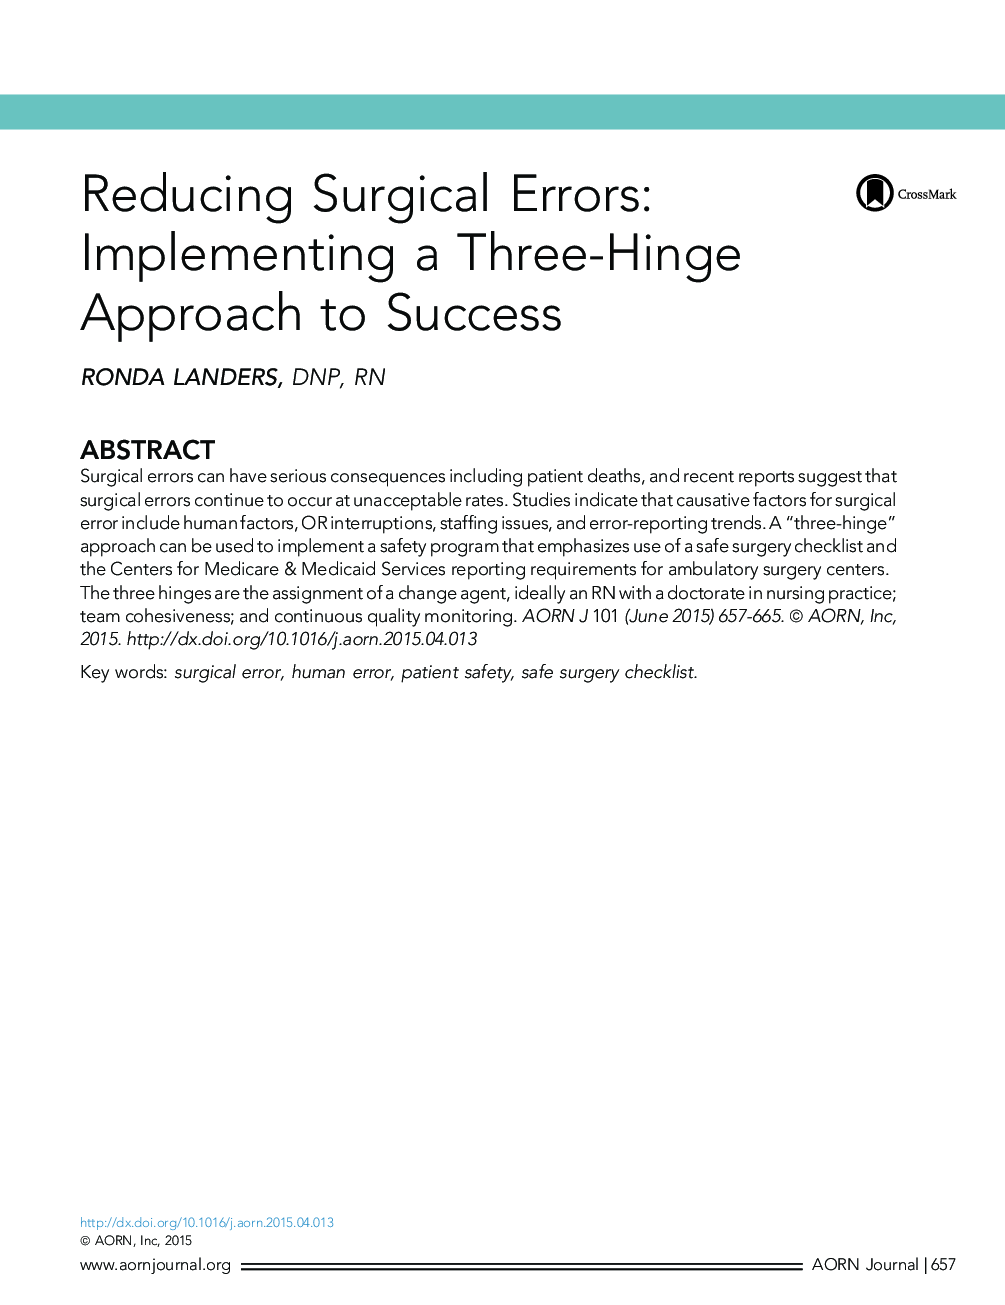 کاهش خطاهای جراحی: اجرای یک رویکرد سه جانبه برای موفقیت 